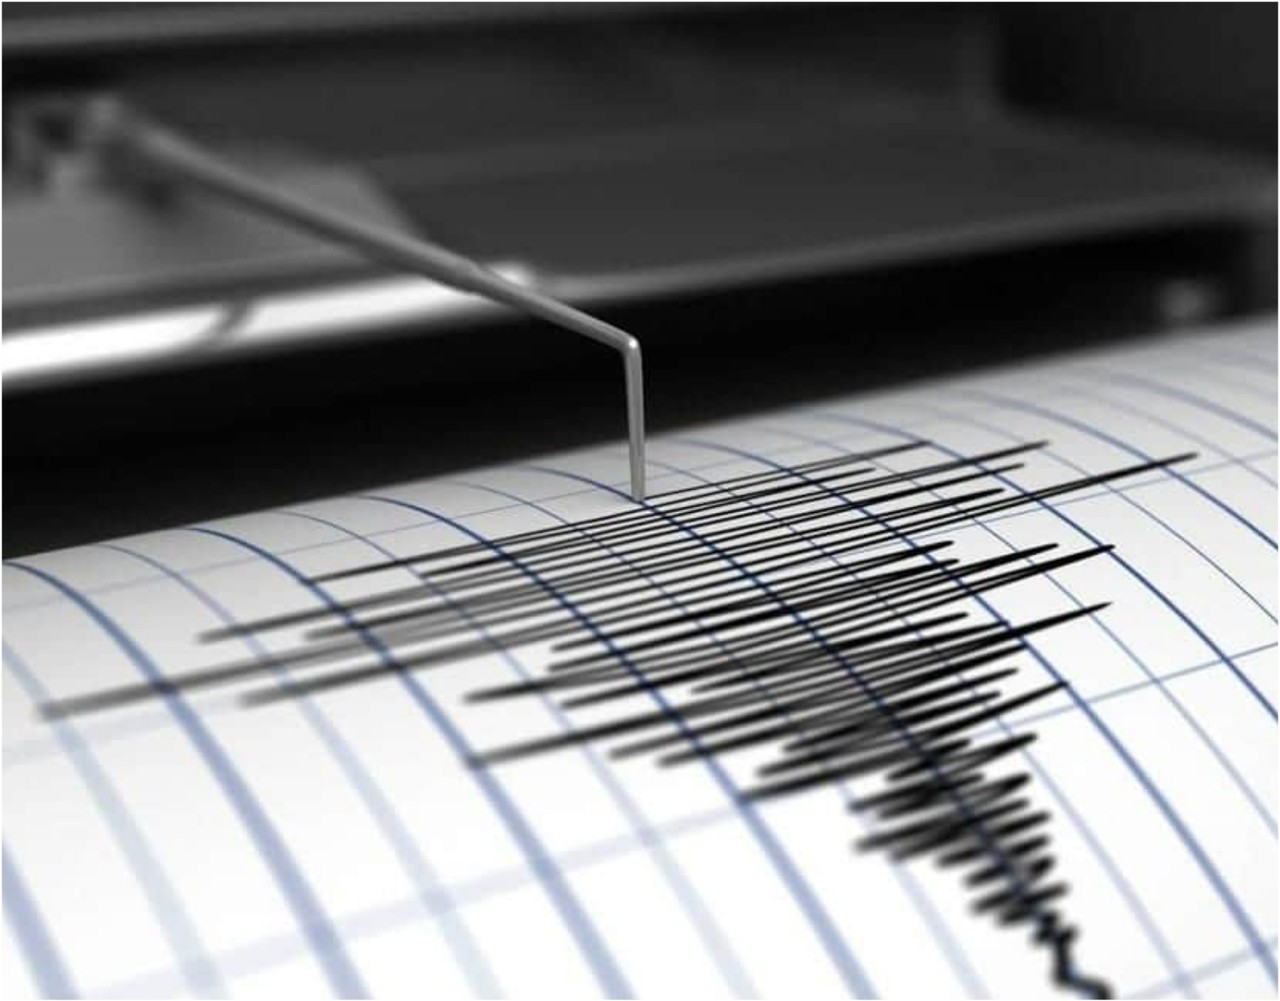 Vuelve a temblar en Turquía con terremoto de magnitud 5.3